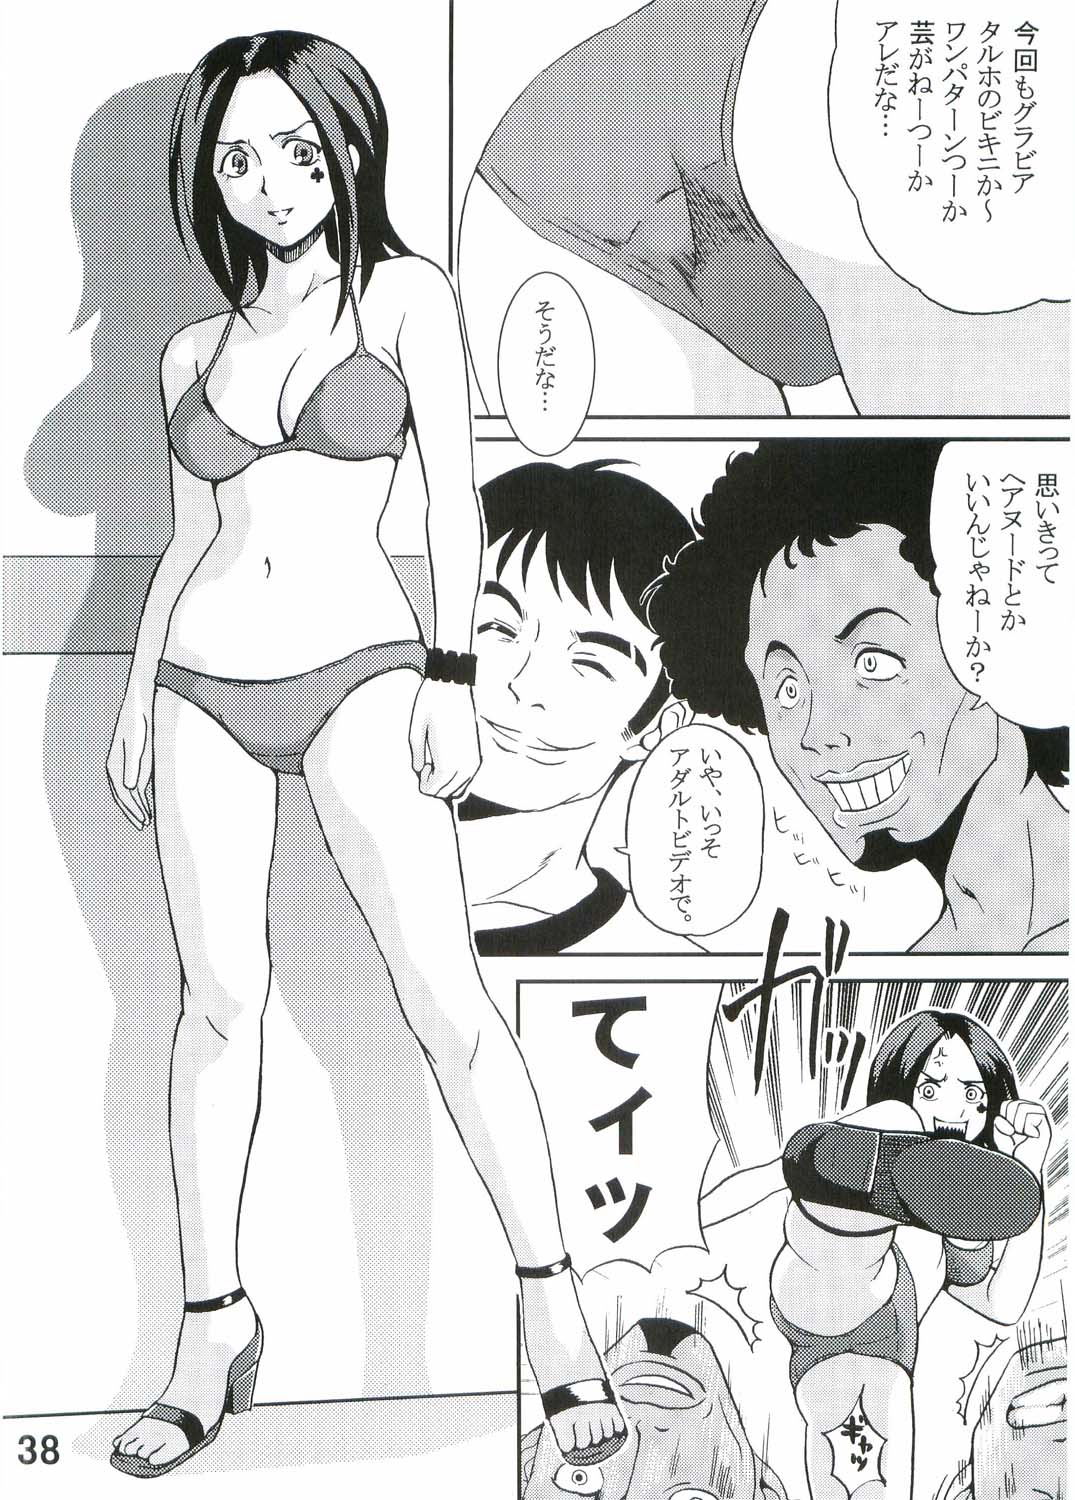 [St. Rio (Kitty, Kouenji Rei)] Ura ray-out (Eureka seveN) page 39 full